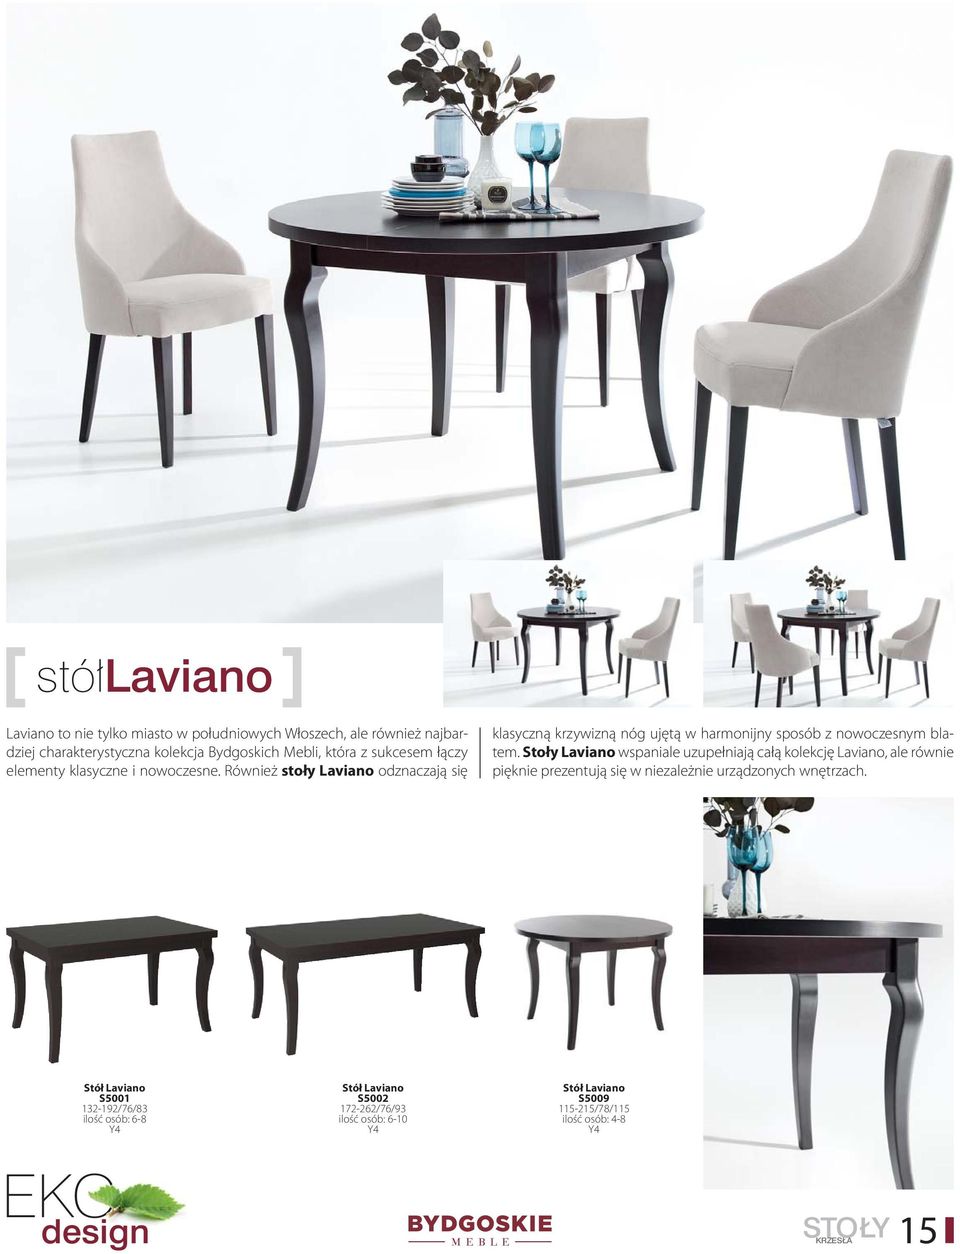 Również stoły Laviano odznaczają się klasyczną krzywizną nóg ujętą w harmonijny sposób z nowoczesnym blatem.